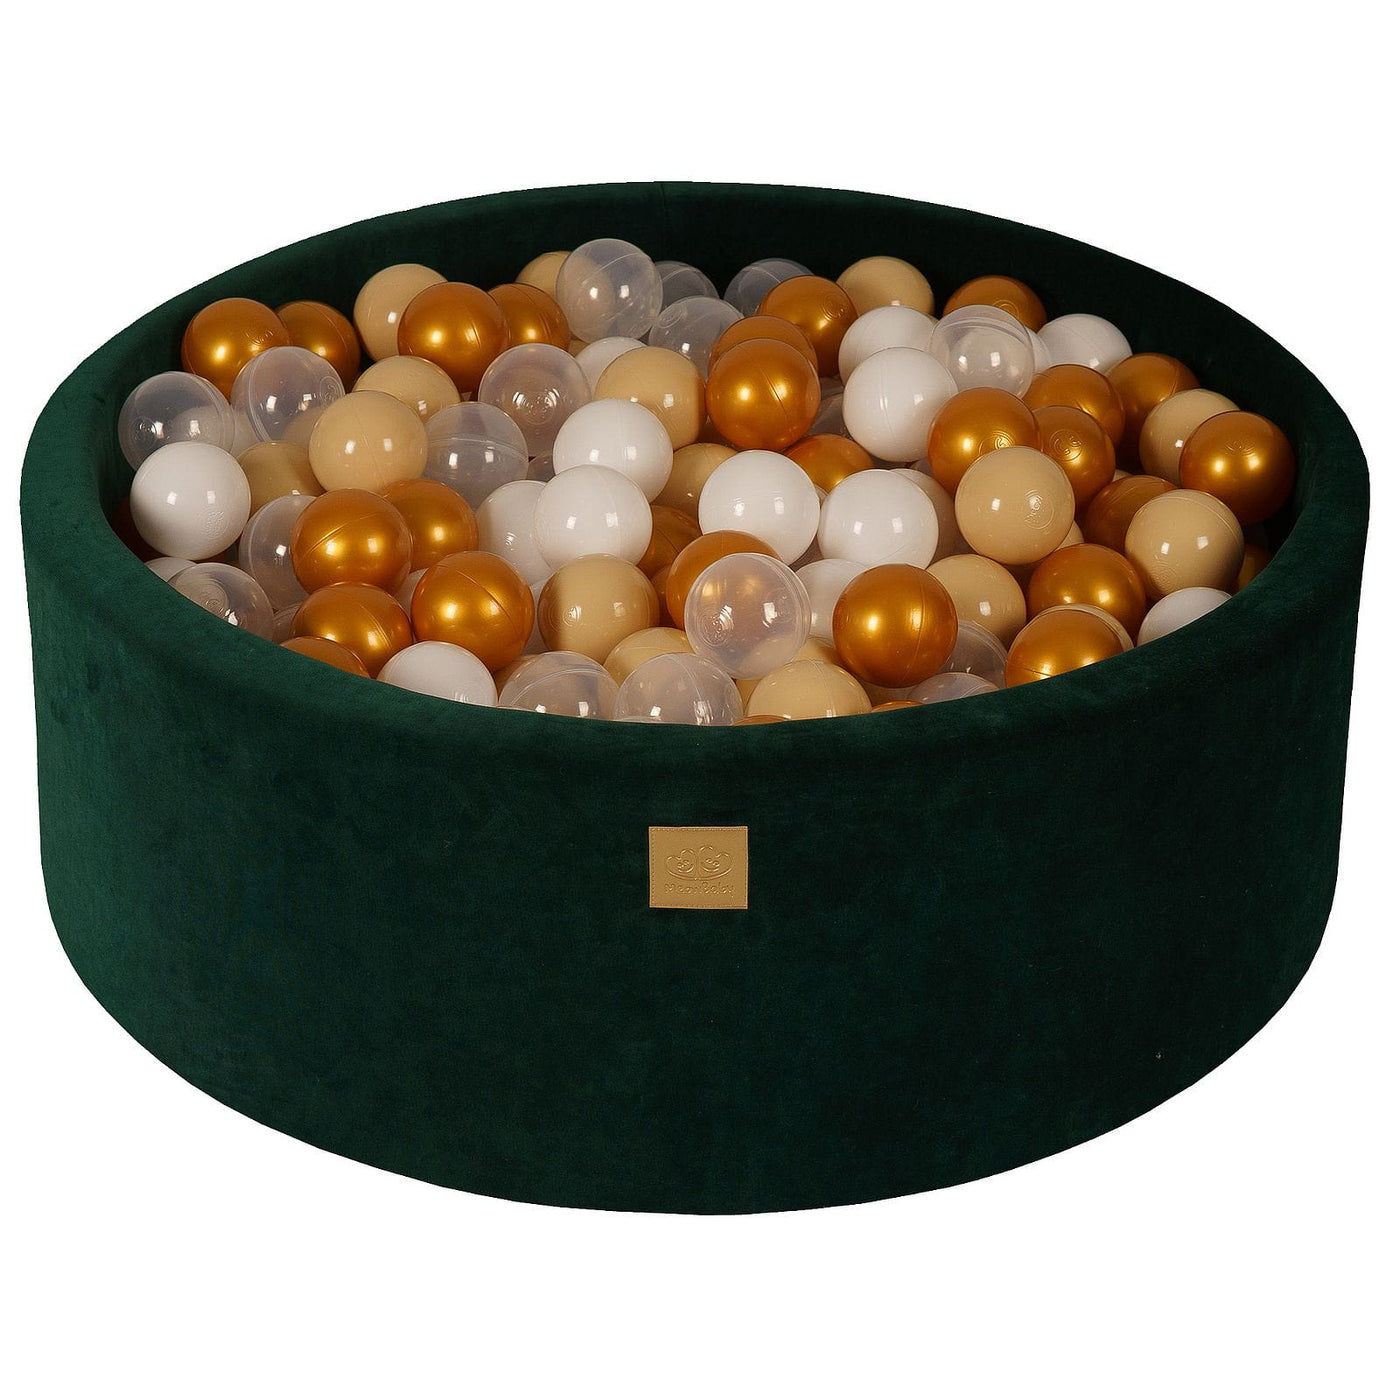 Velvet Dark Green Ball Pit - Gold, Beige, White & Clear Balls